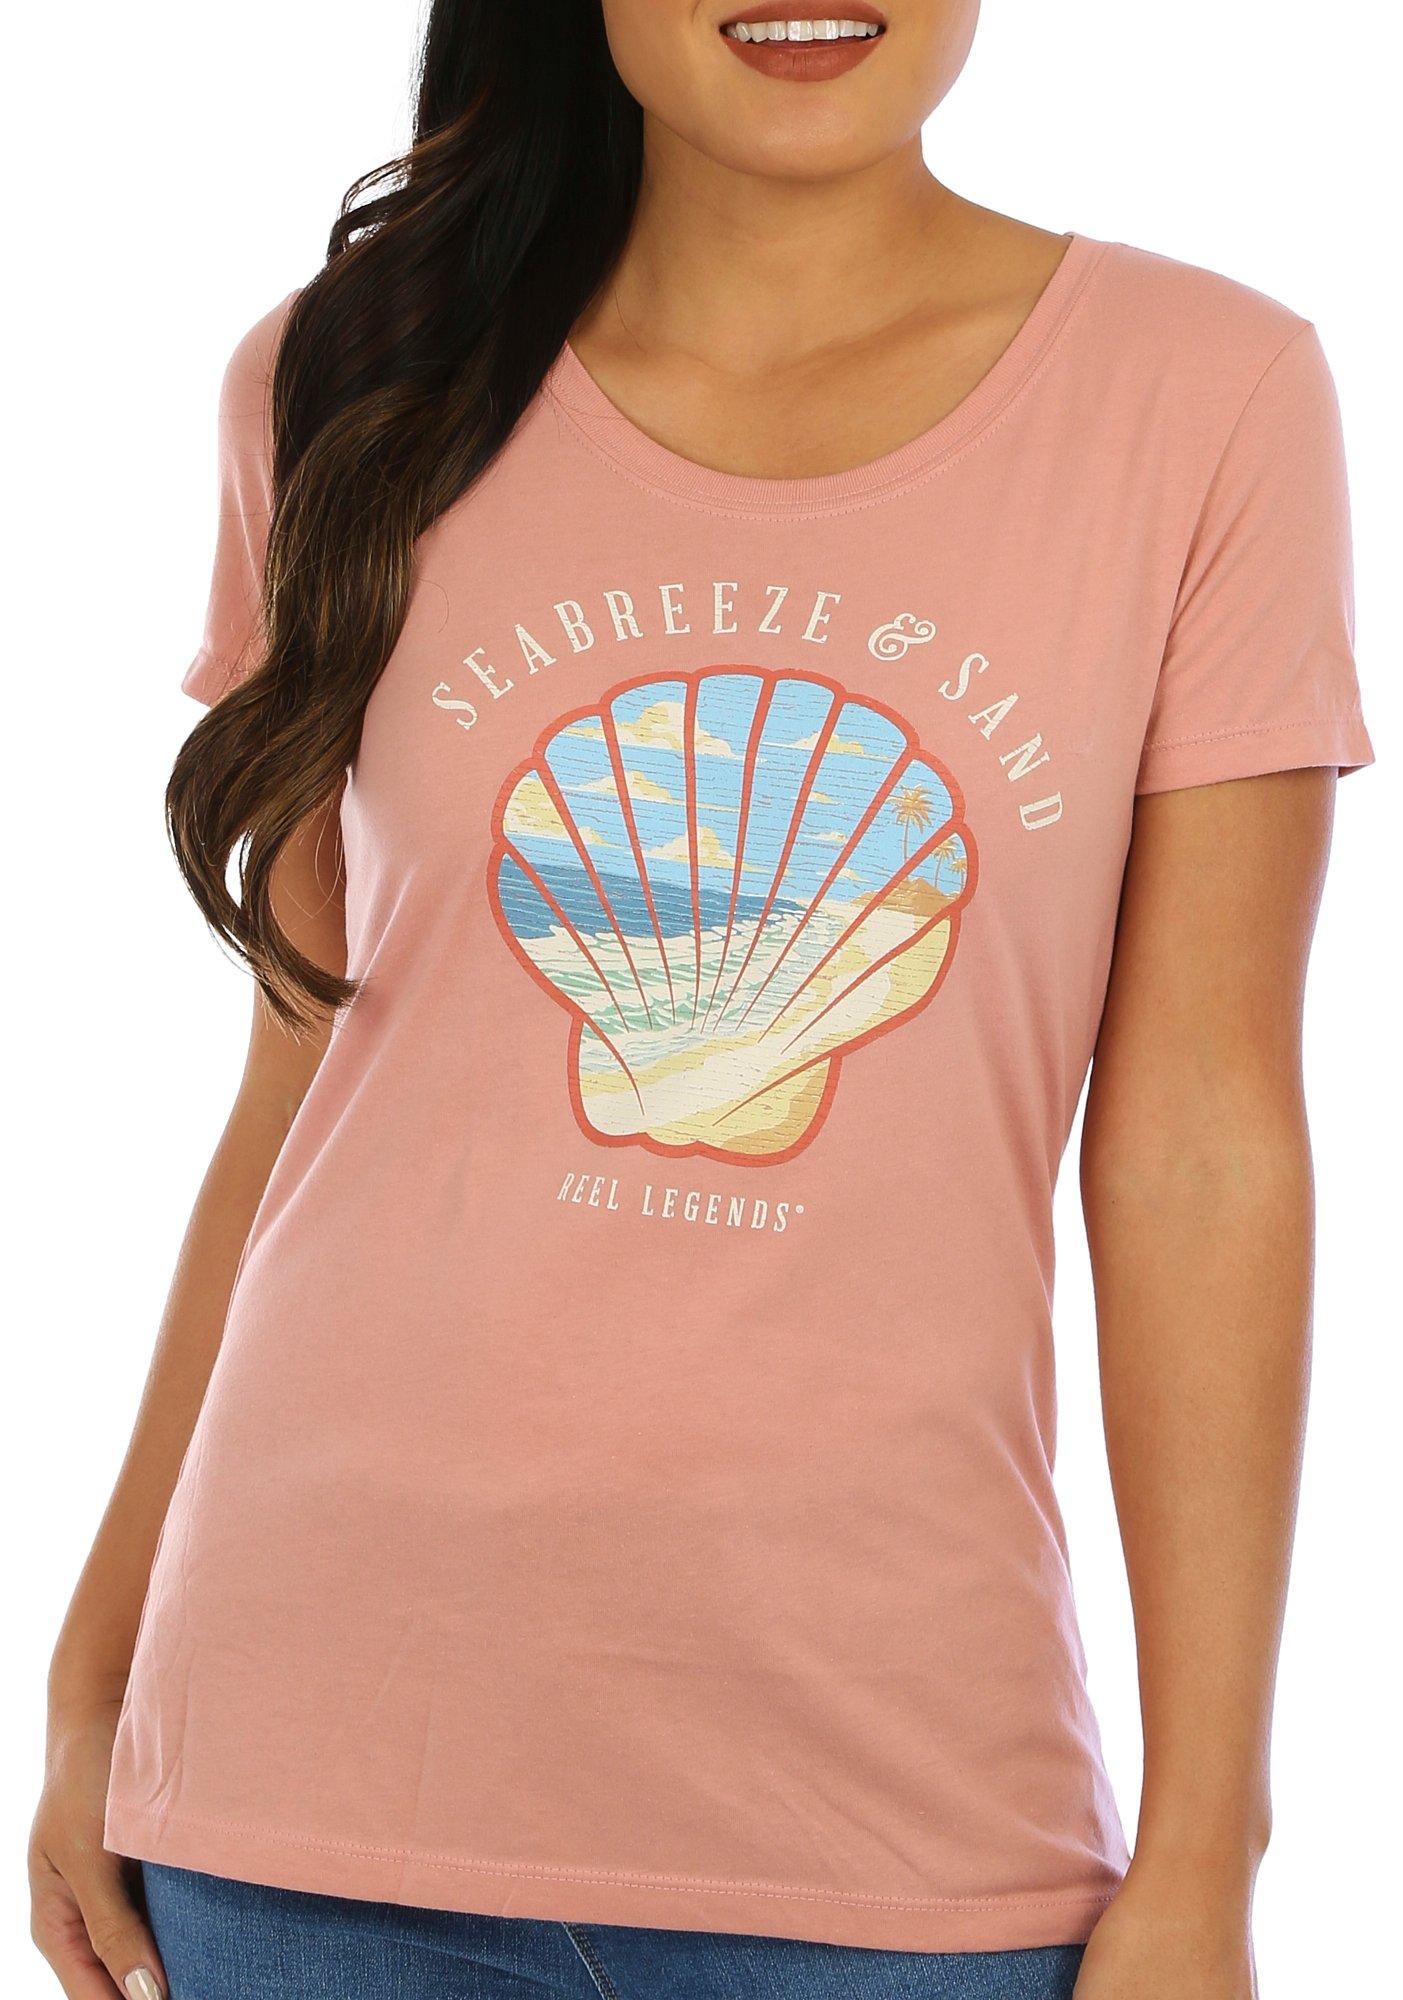 Womens Seabreeze & Sand Short Sleeve T-Shirt